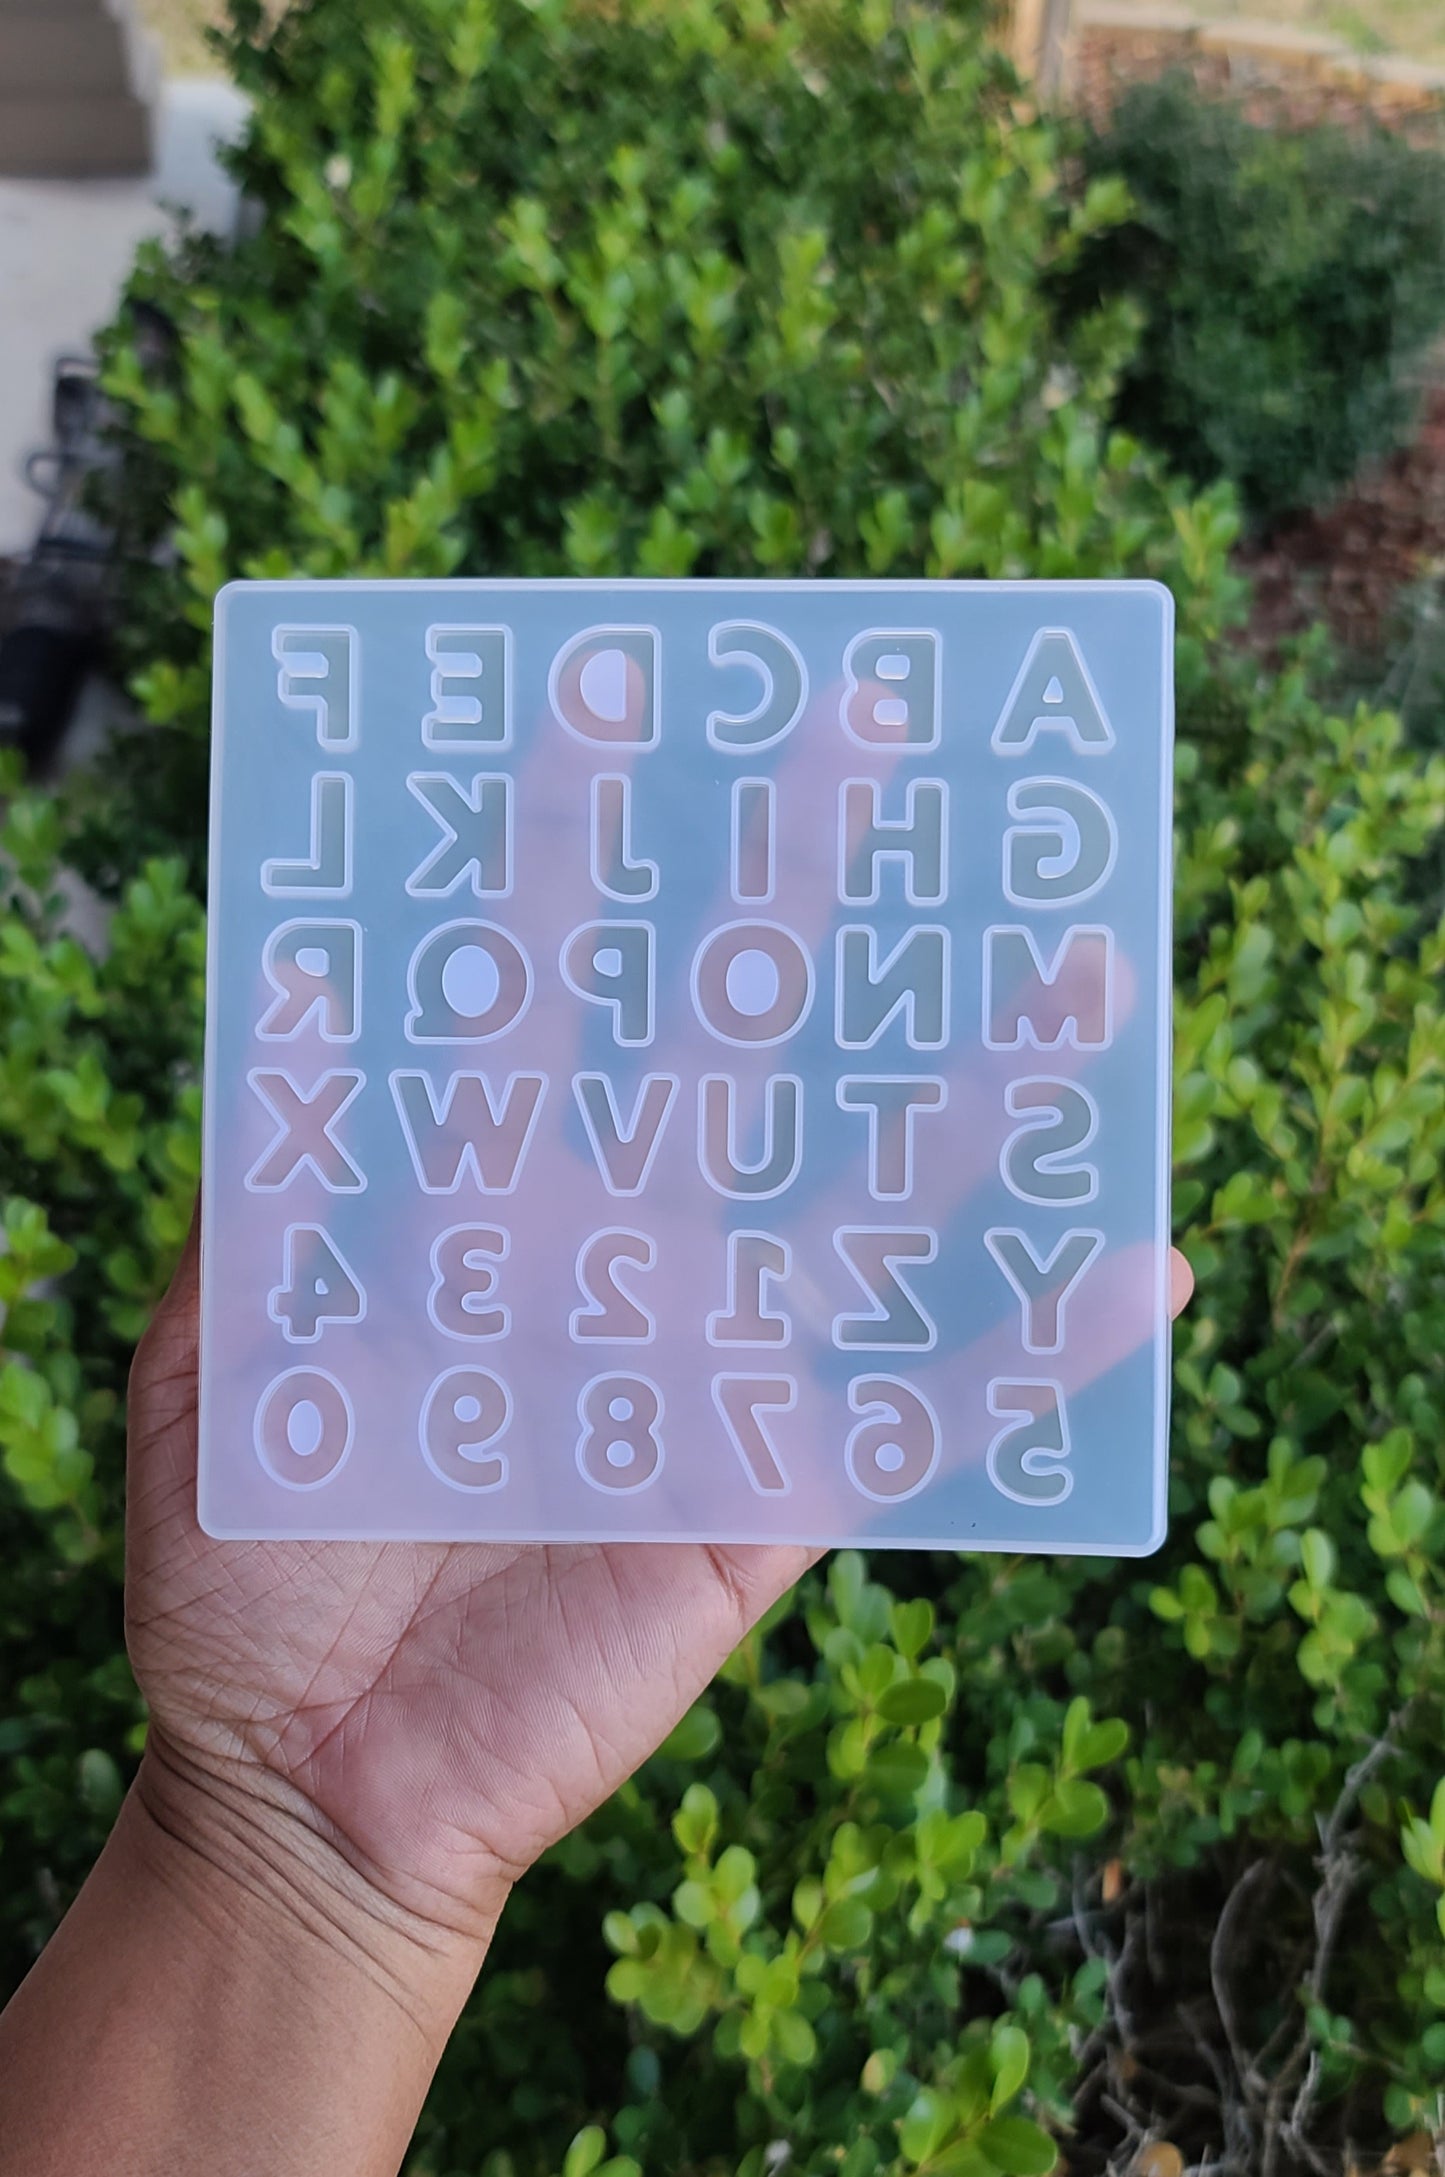 Mini Molde de letras y números / Molde de abacedario